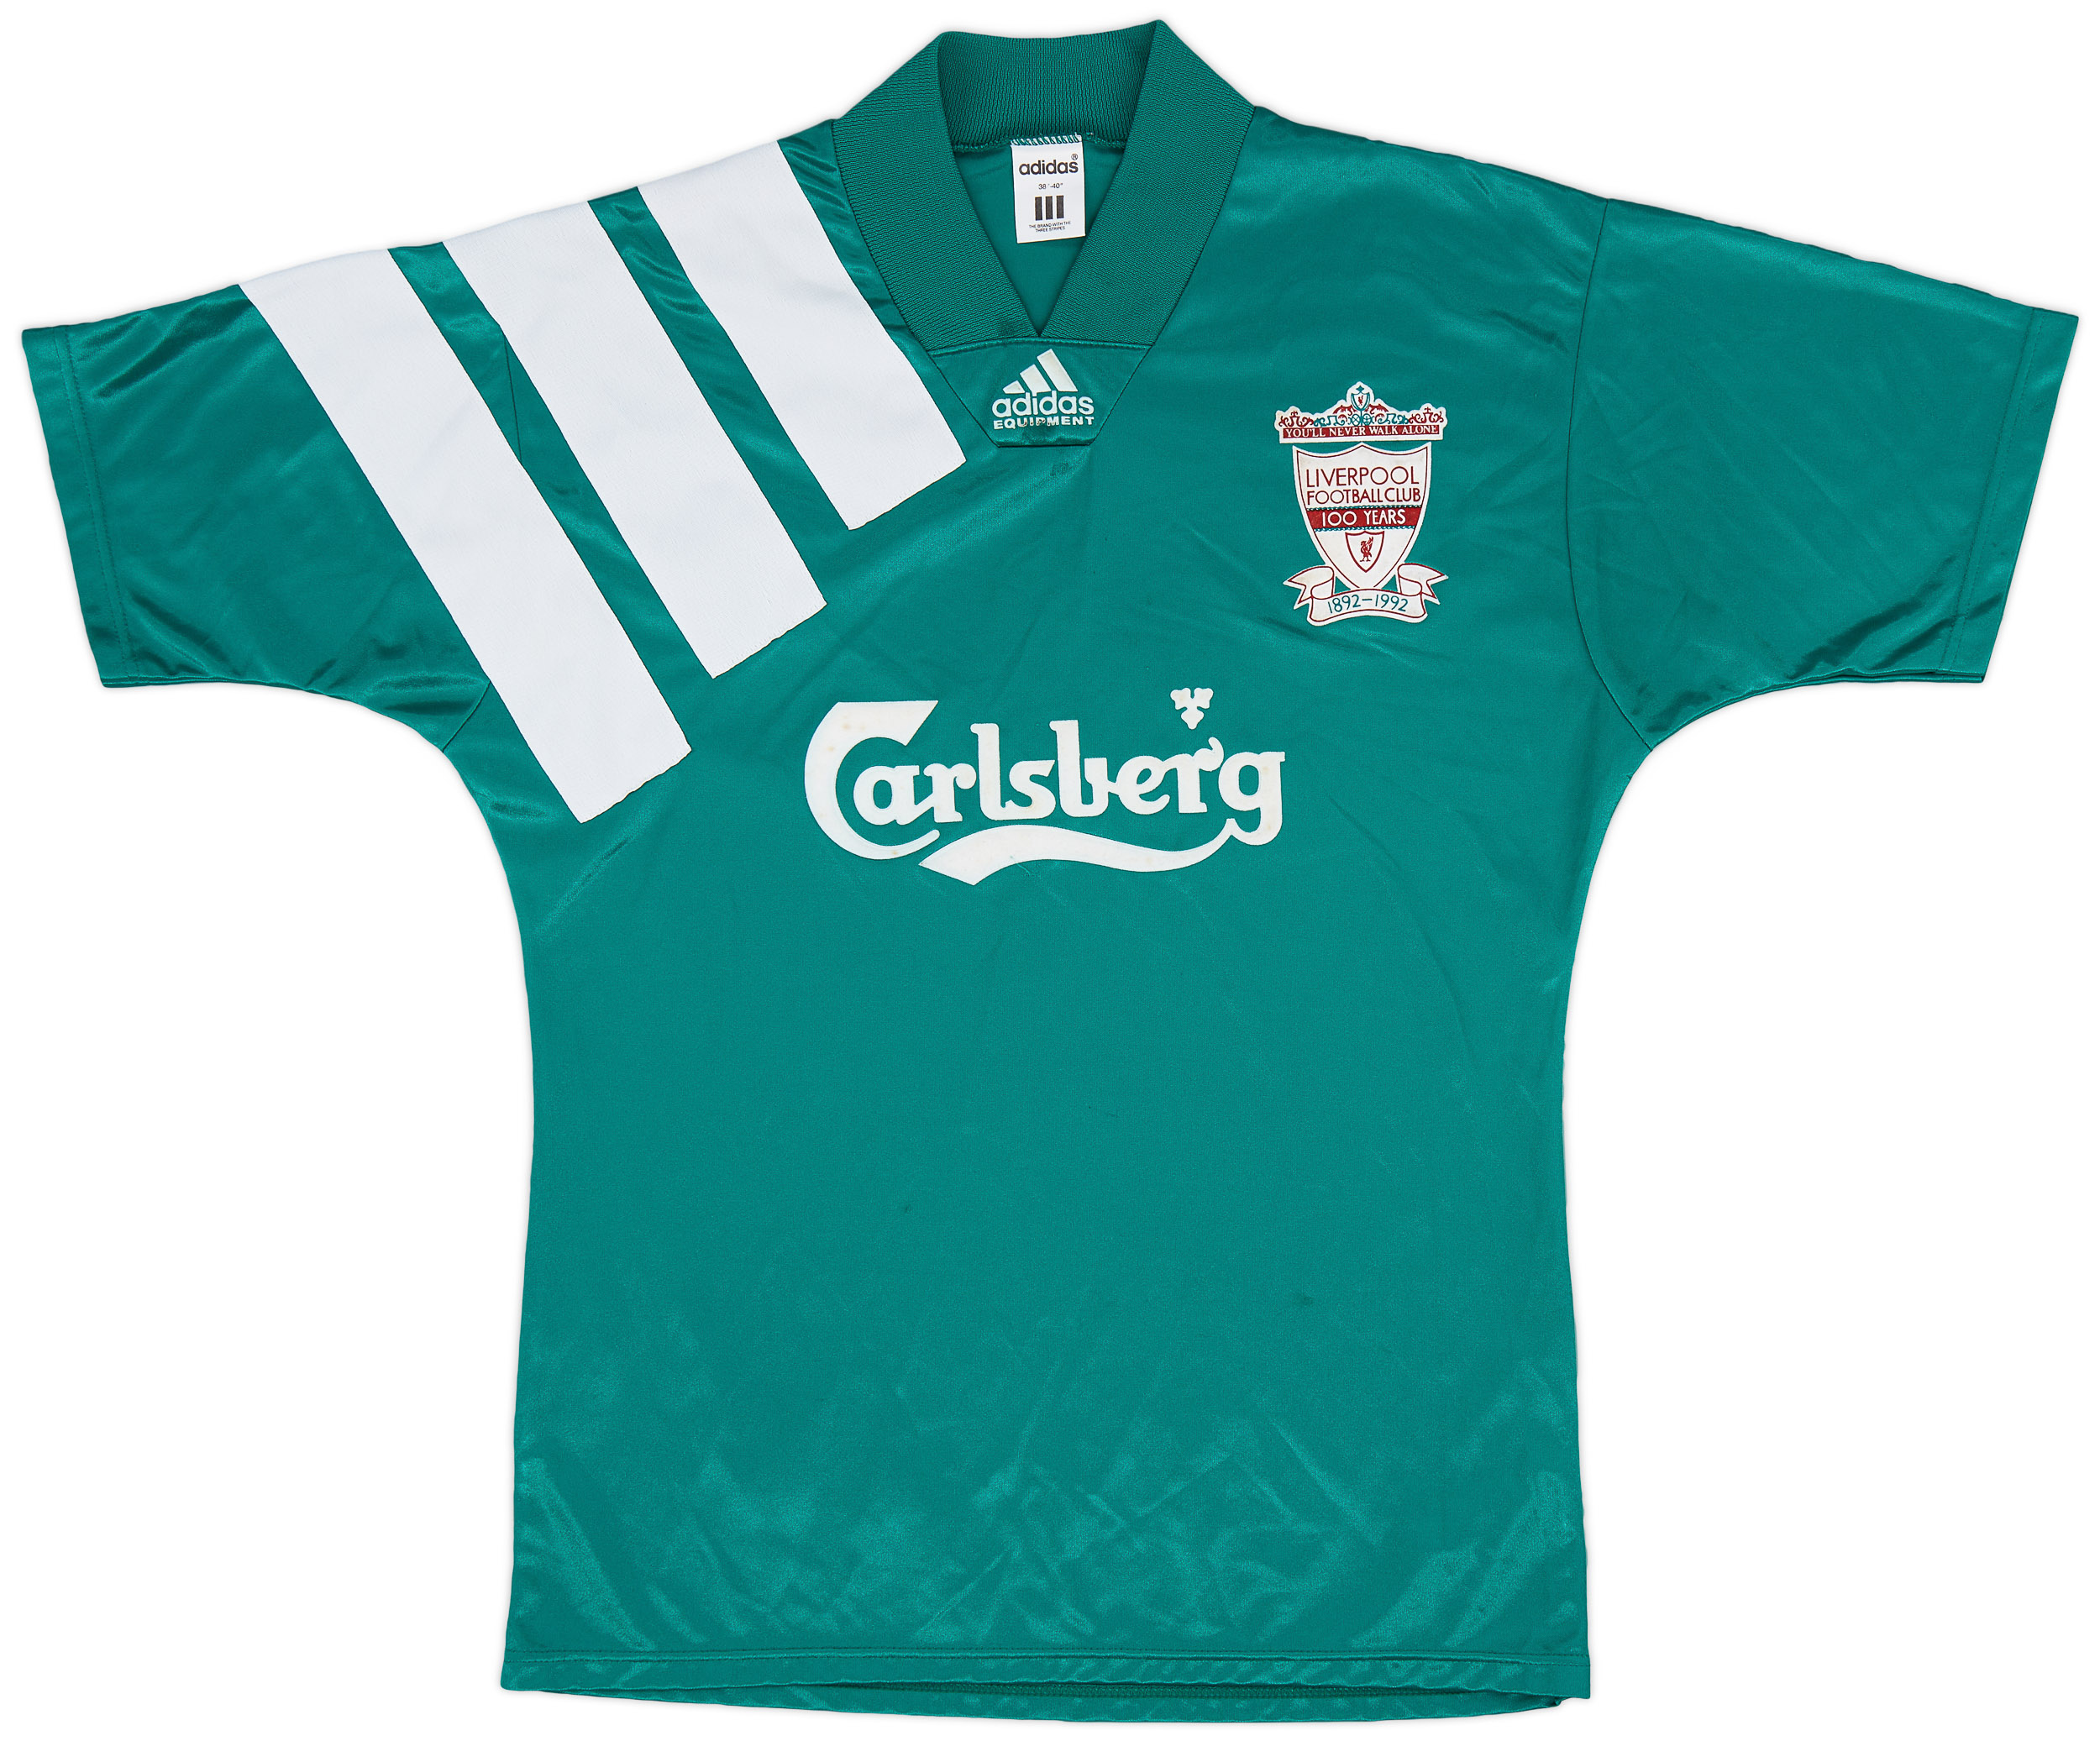 1992-93 Liverpool Centenary Away Shirt - 8/10 - ()